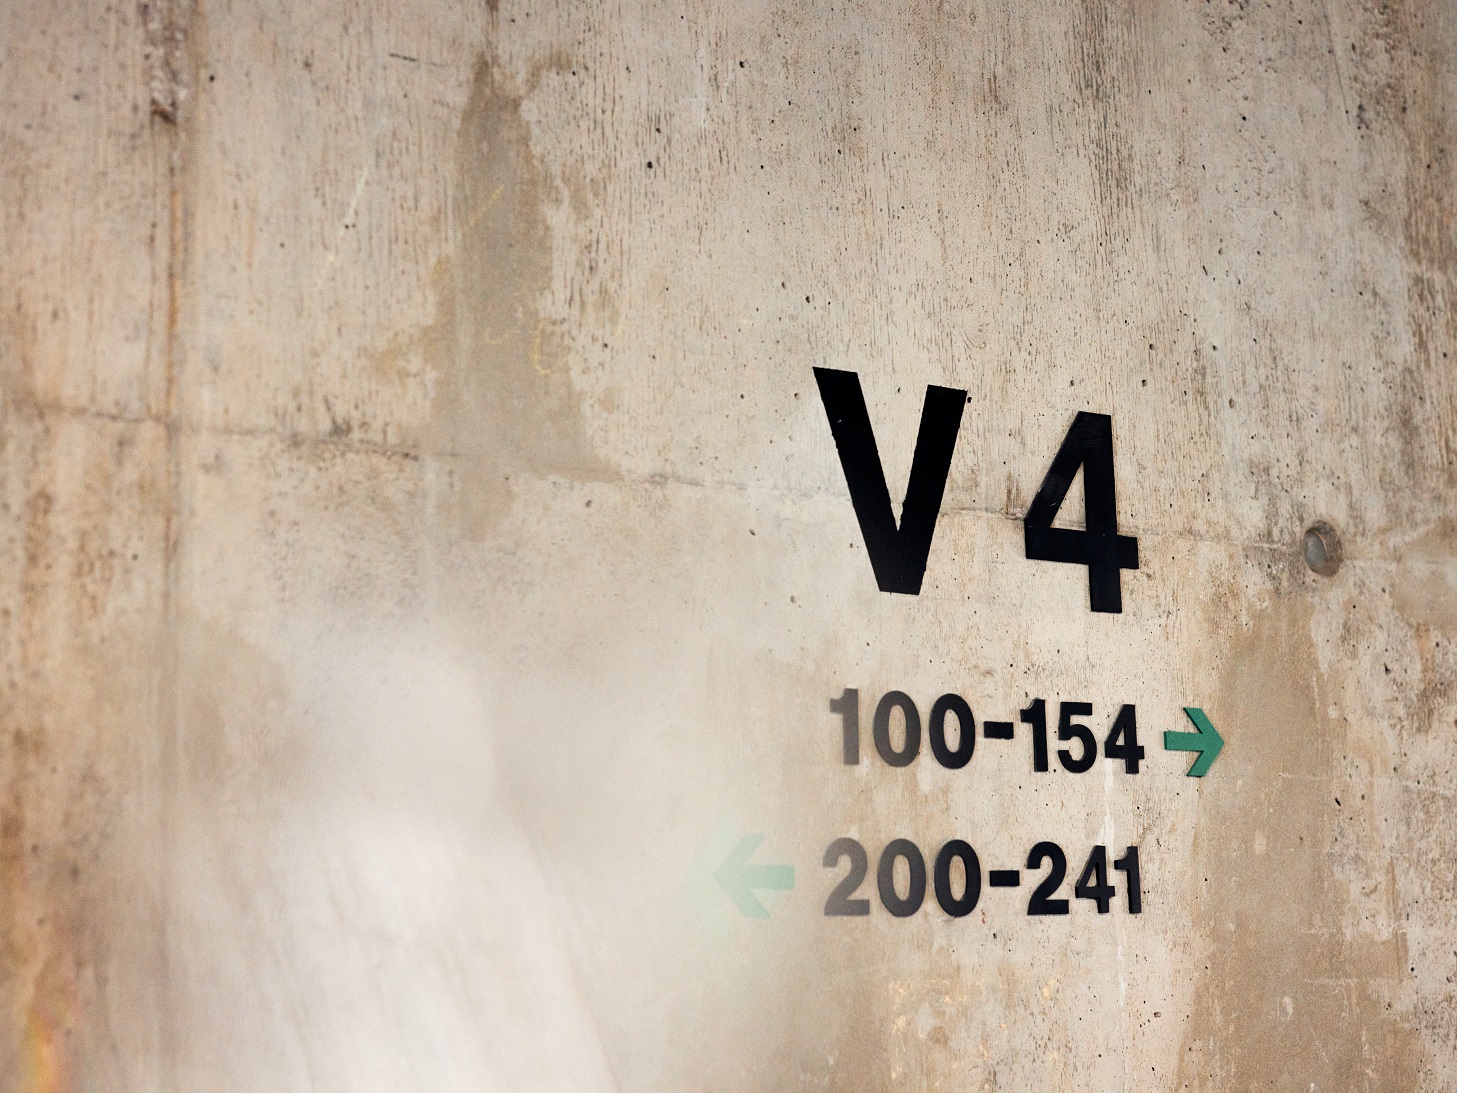 Schriftzug "V4" und Pfeile mit Raumnummern auf einer Betonwand